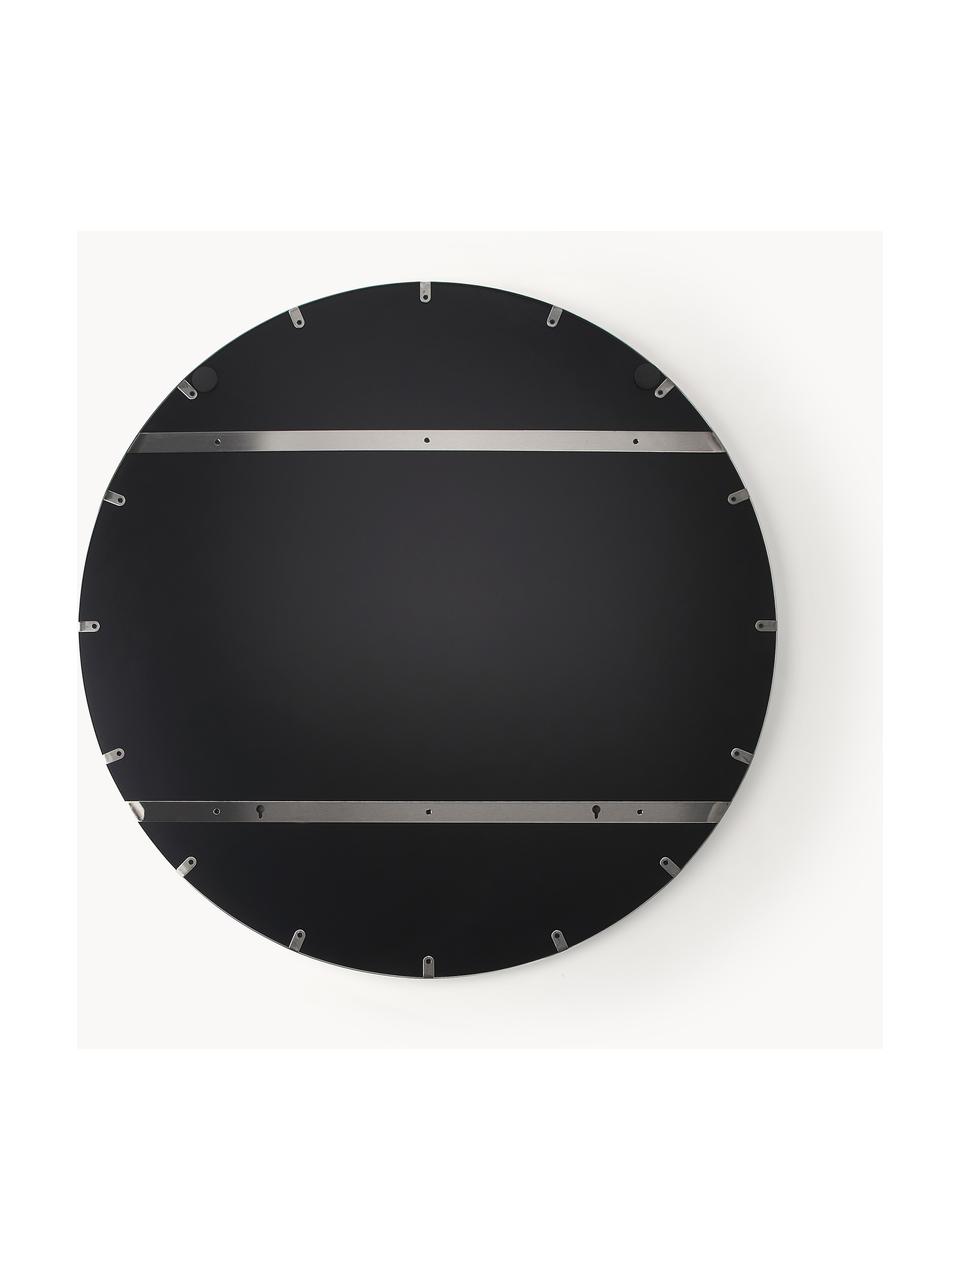 Specchio rotondo da parete Lacie, Cornice: metallo rivestito, Superficie dello specchio: lastra di vetro, Argentato, Ø 55 cm